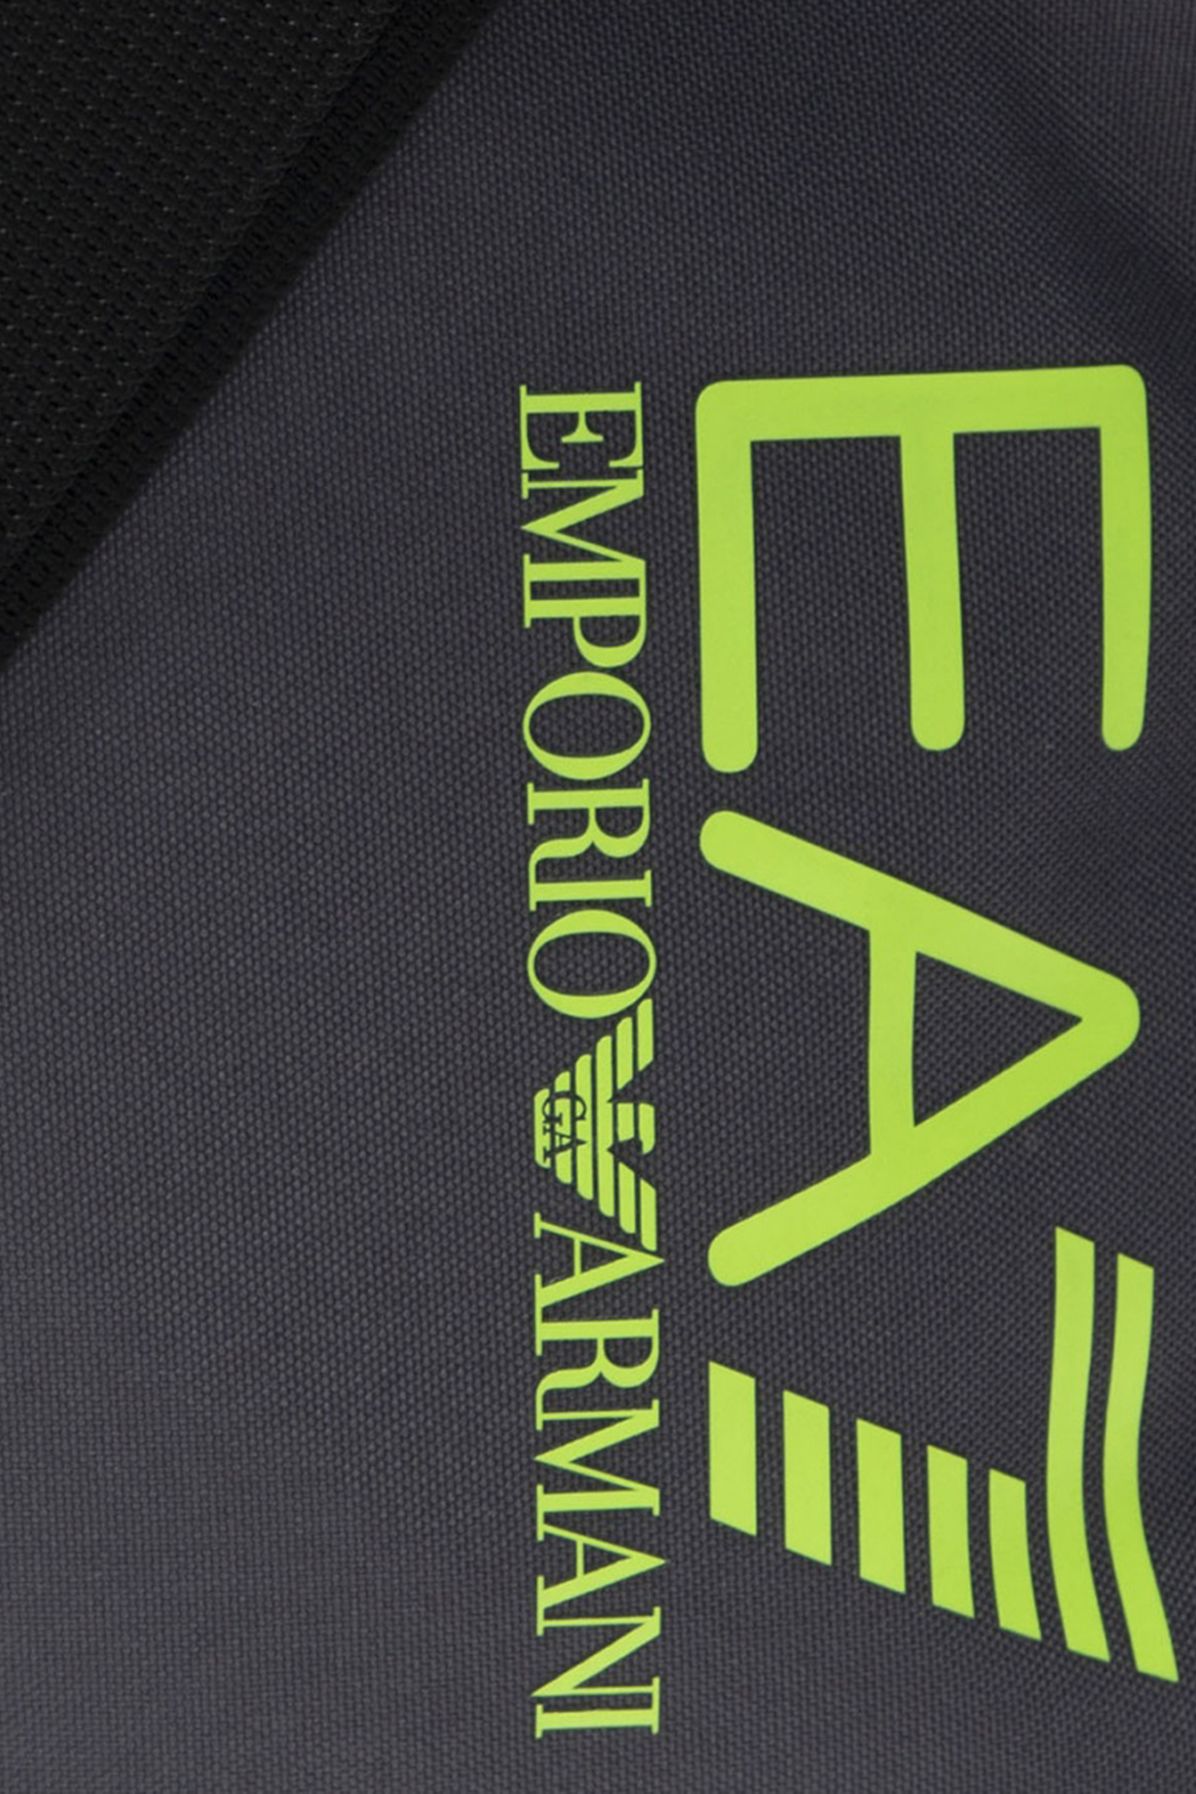 EA7 Emporio Armani Branded shoulder bag